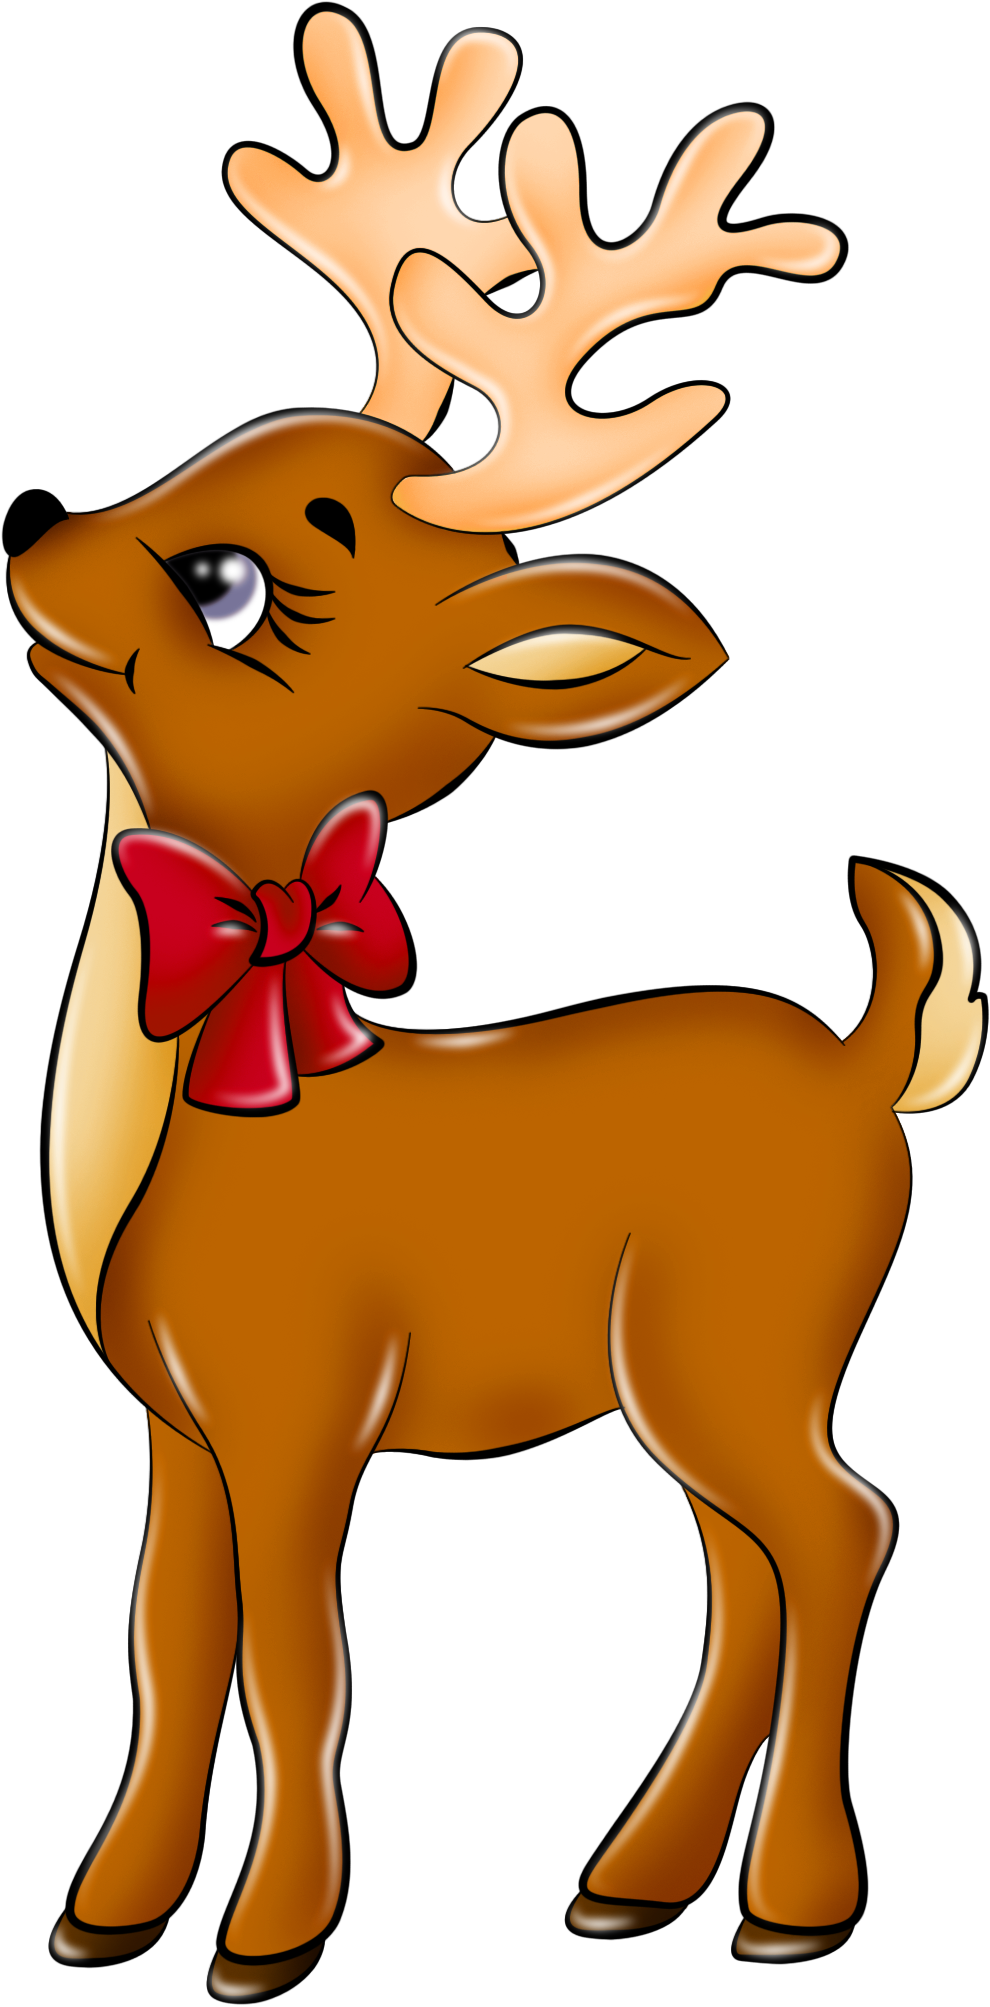 Wildlife - Cartoon Reindeer (1064x2086)